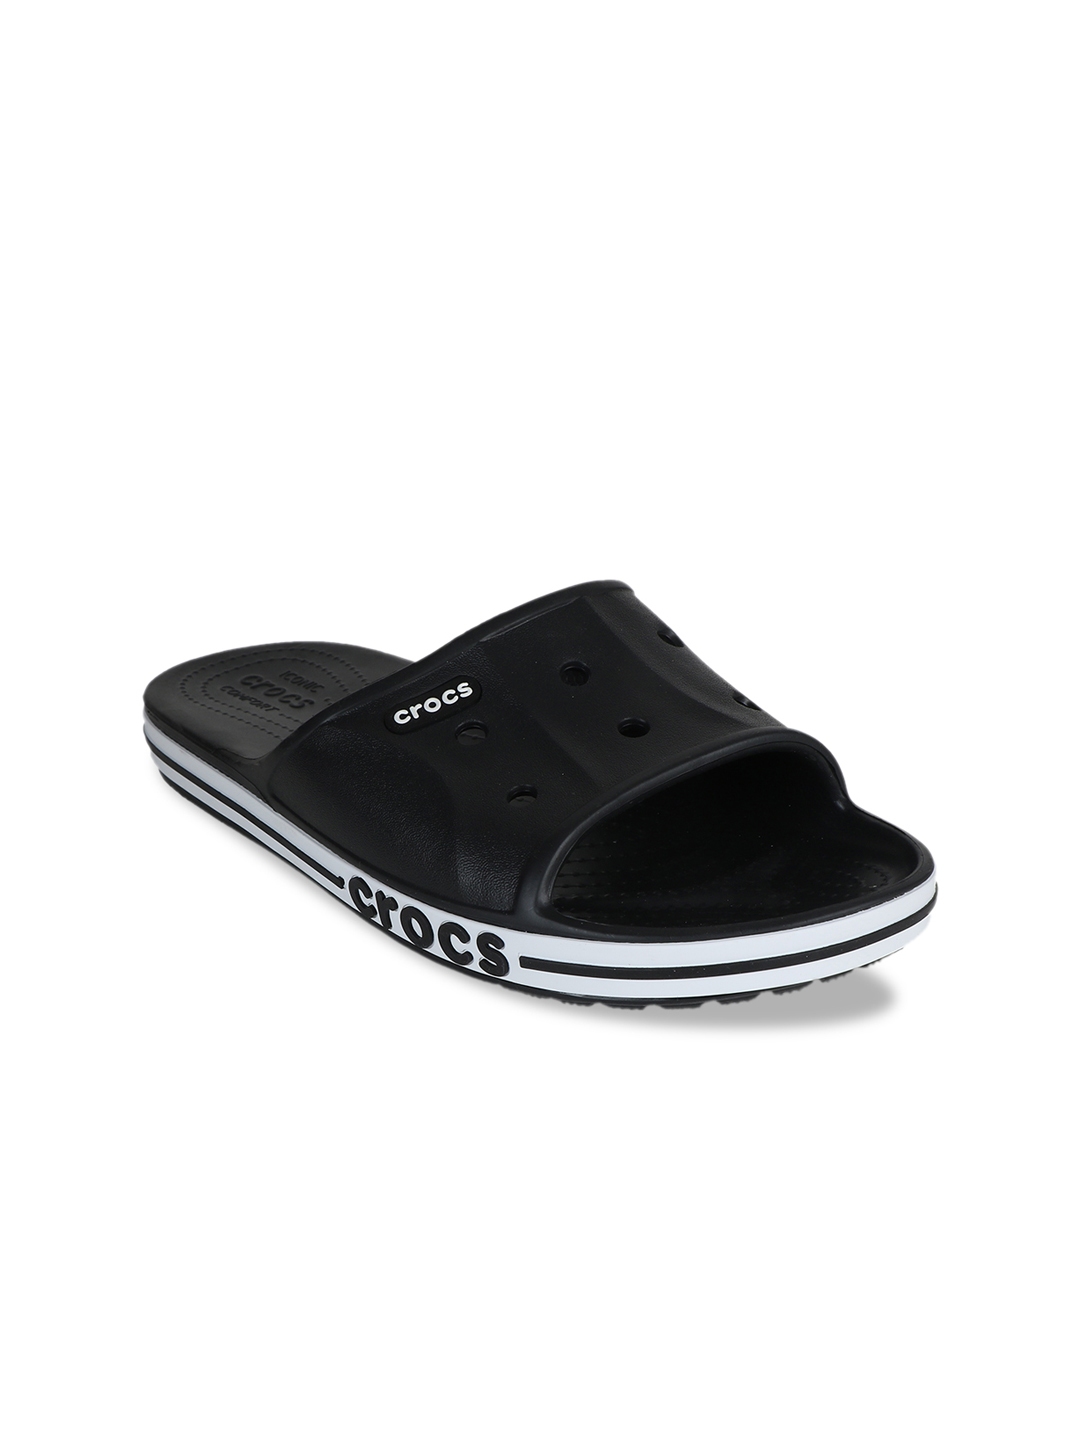 Buy Crocs Men Black Solid Sliders - Flip Flops for Men 9648767 | Myntra